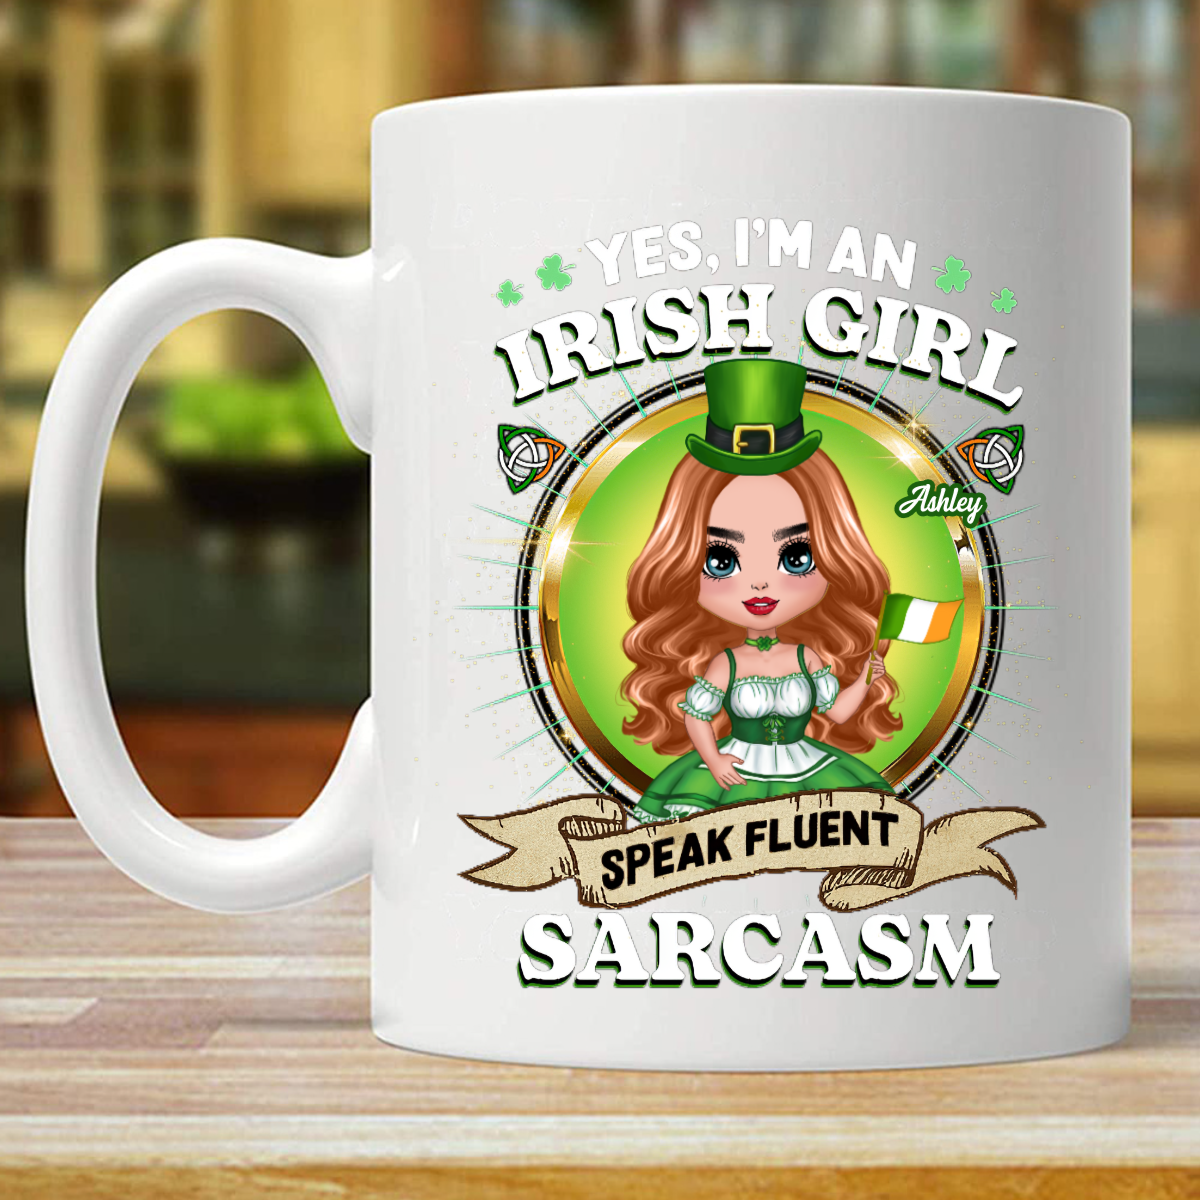 Irish Girl Speaks Fluent Sarcasm Personalized Mug (Double-sided Printing)